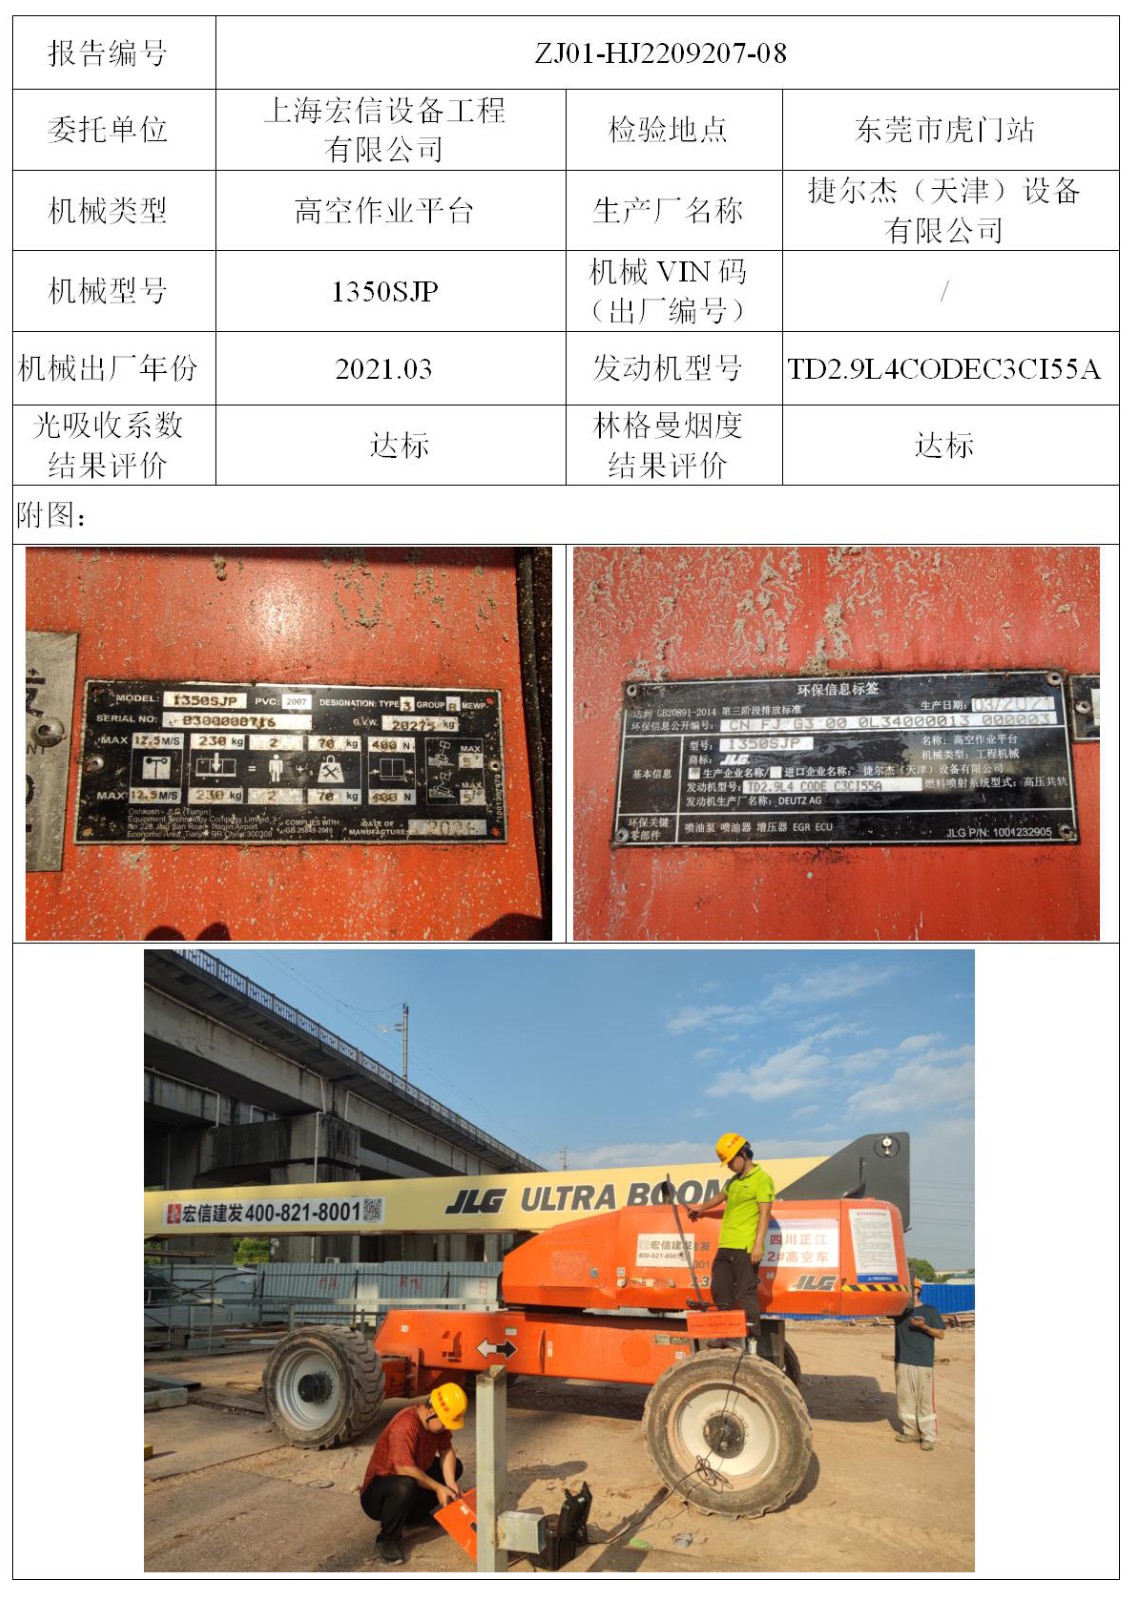 委托-ZJ01-HJ2209207-08上海宏信设备工程有限公司（叉车废气）二维码-张伟仪_01.jpg